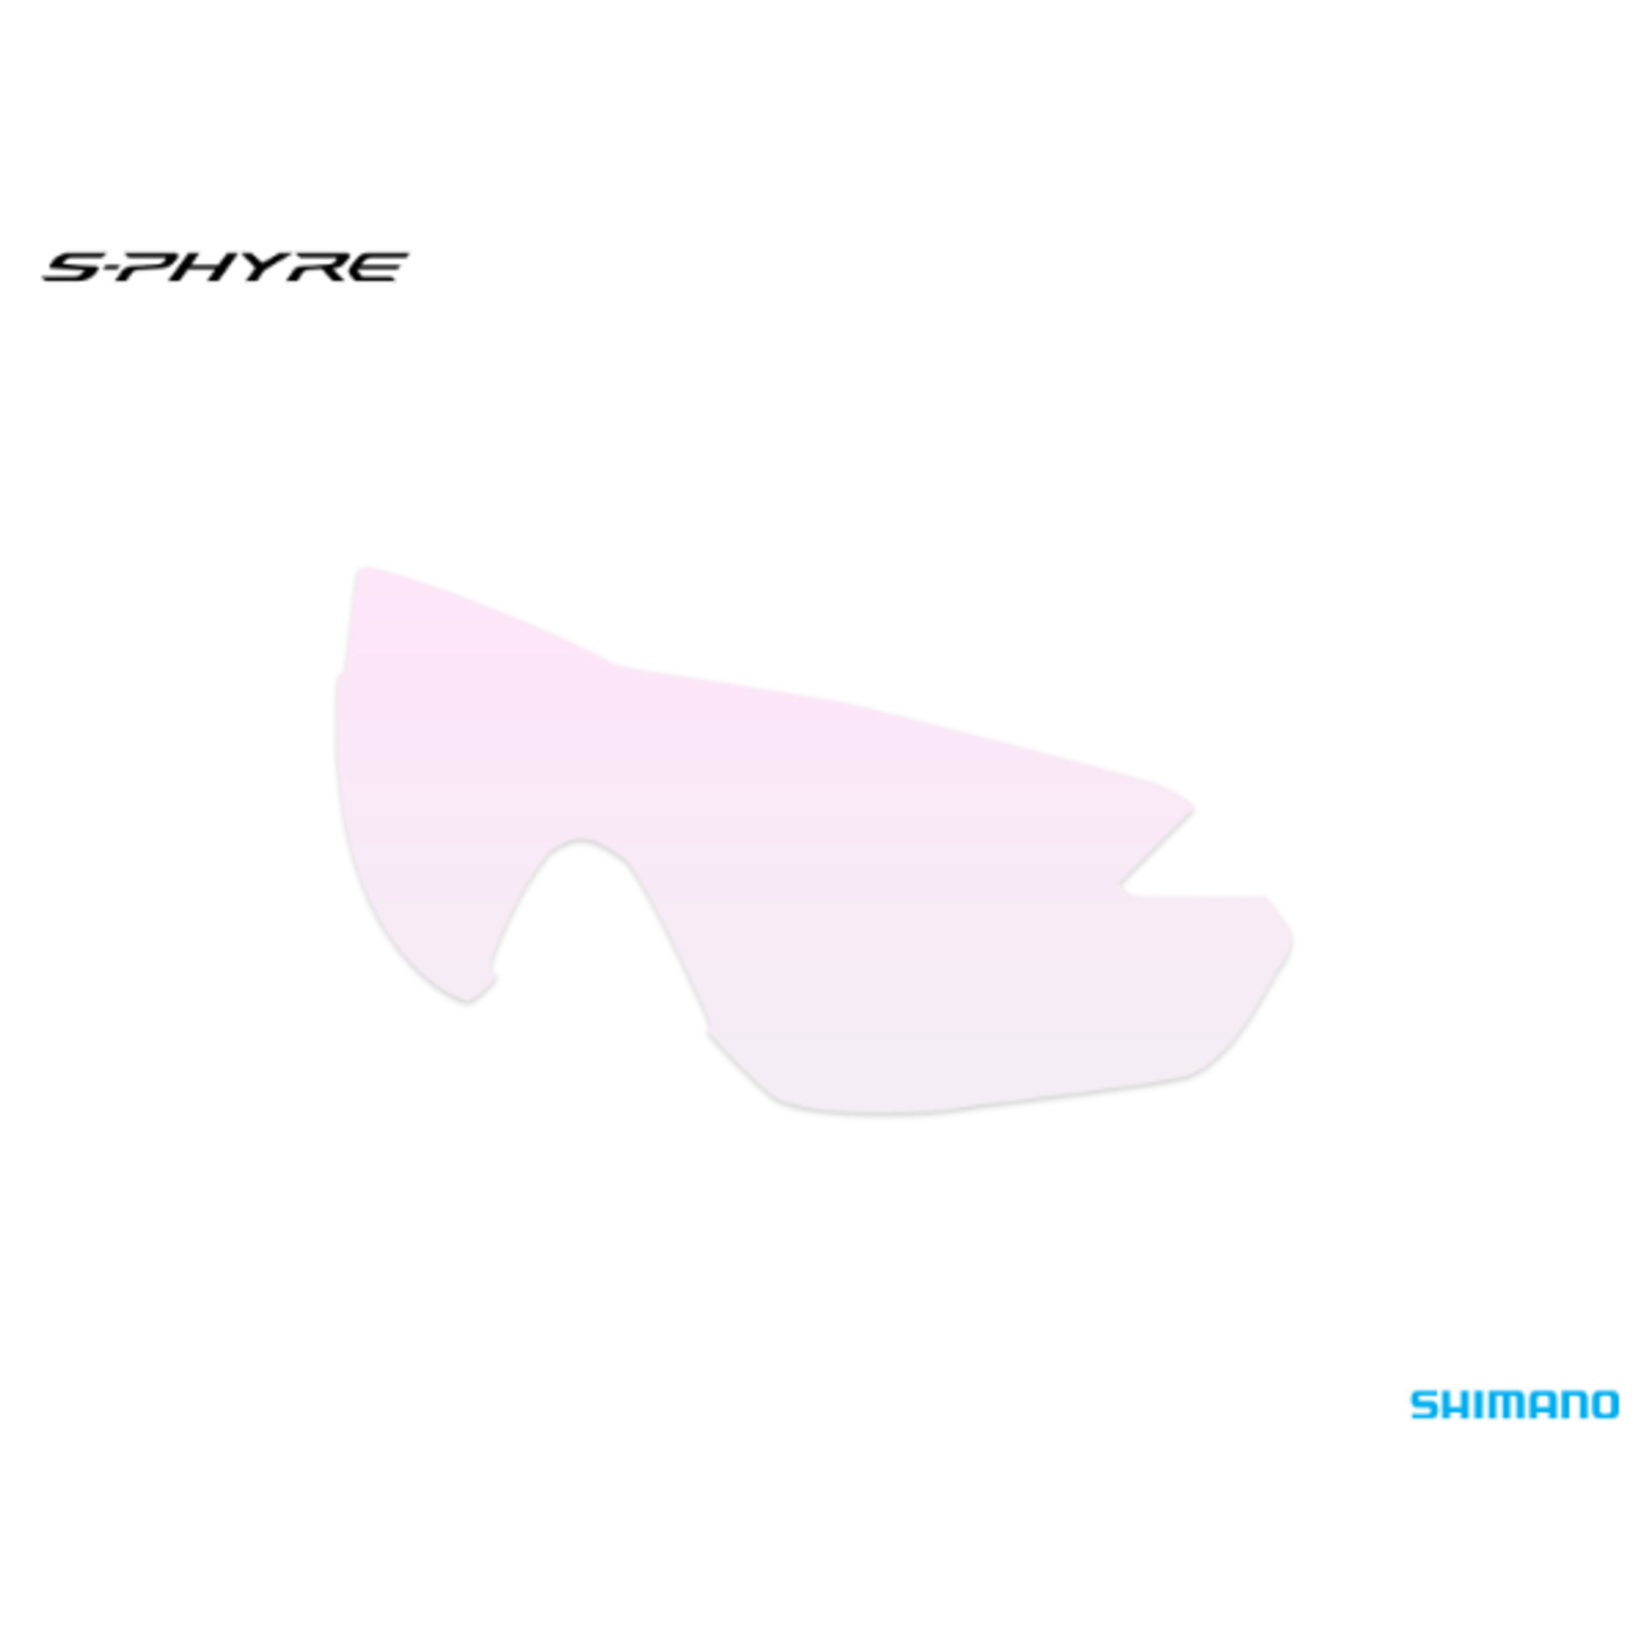 Shimano Shimano Eyewear Bike Goggles Spare Lens - S-Phyre R Sphr1 - Cloud Mirror